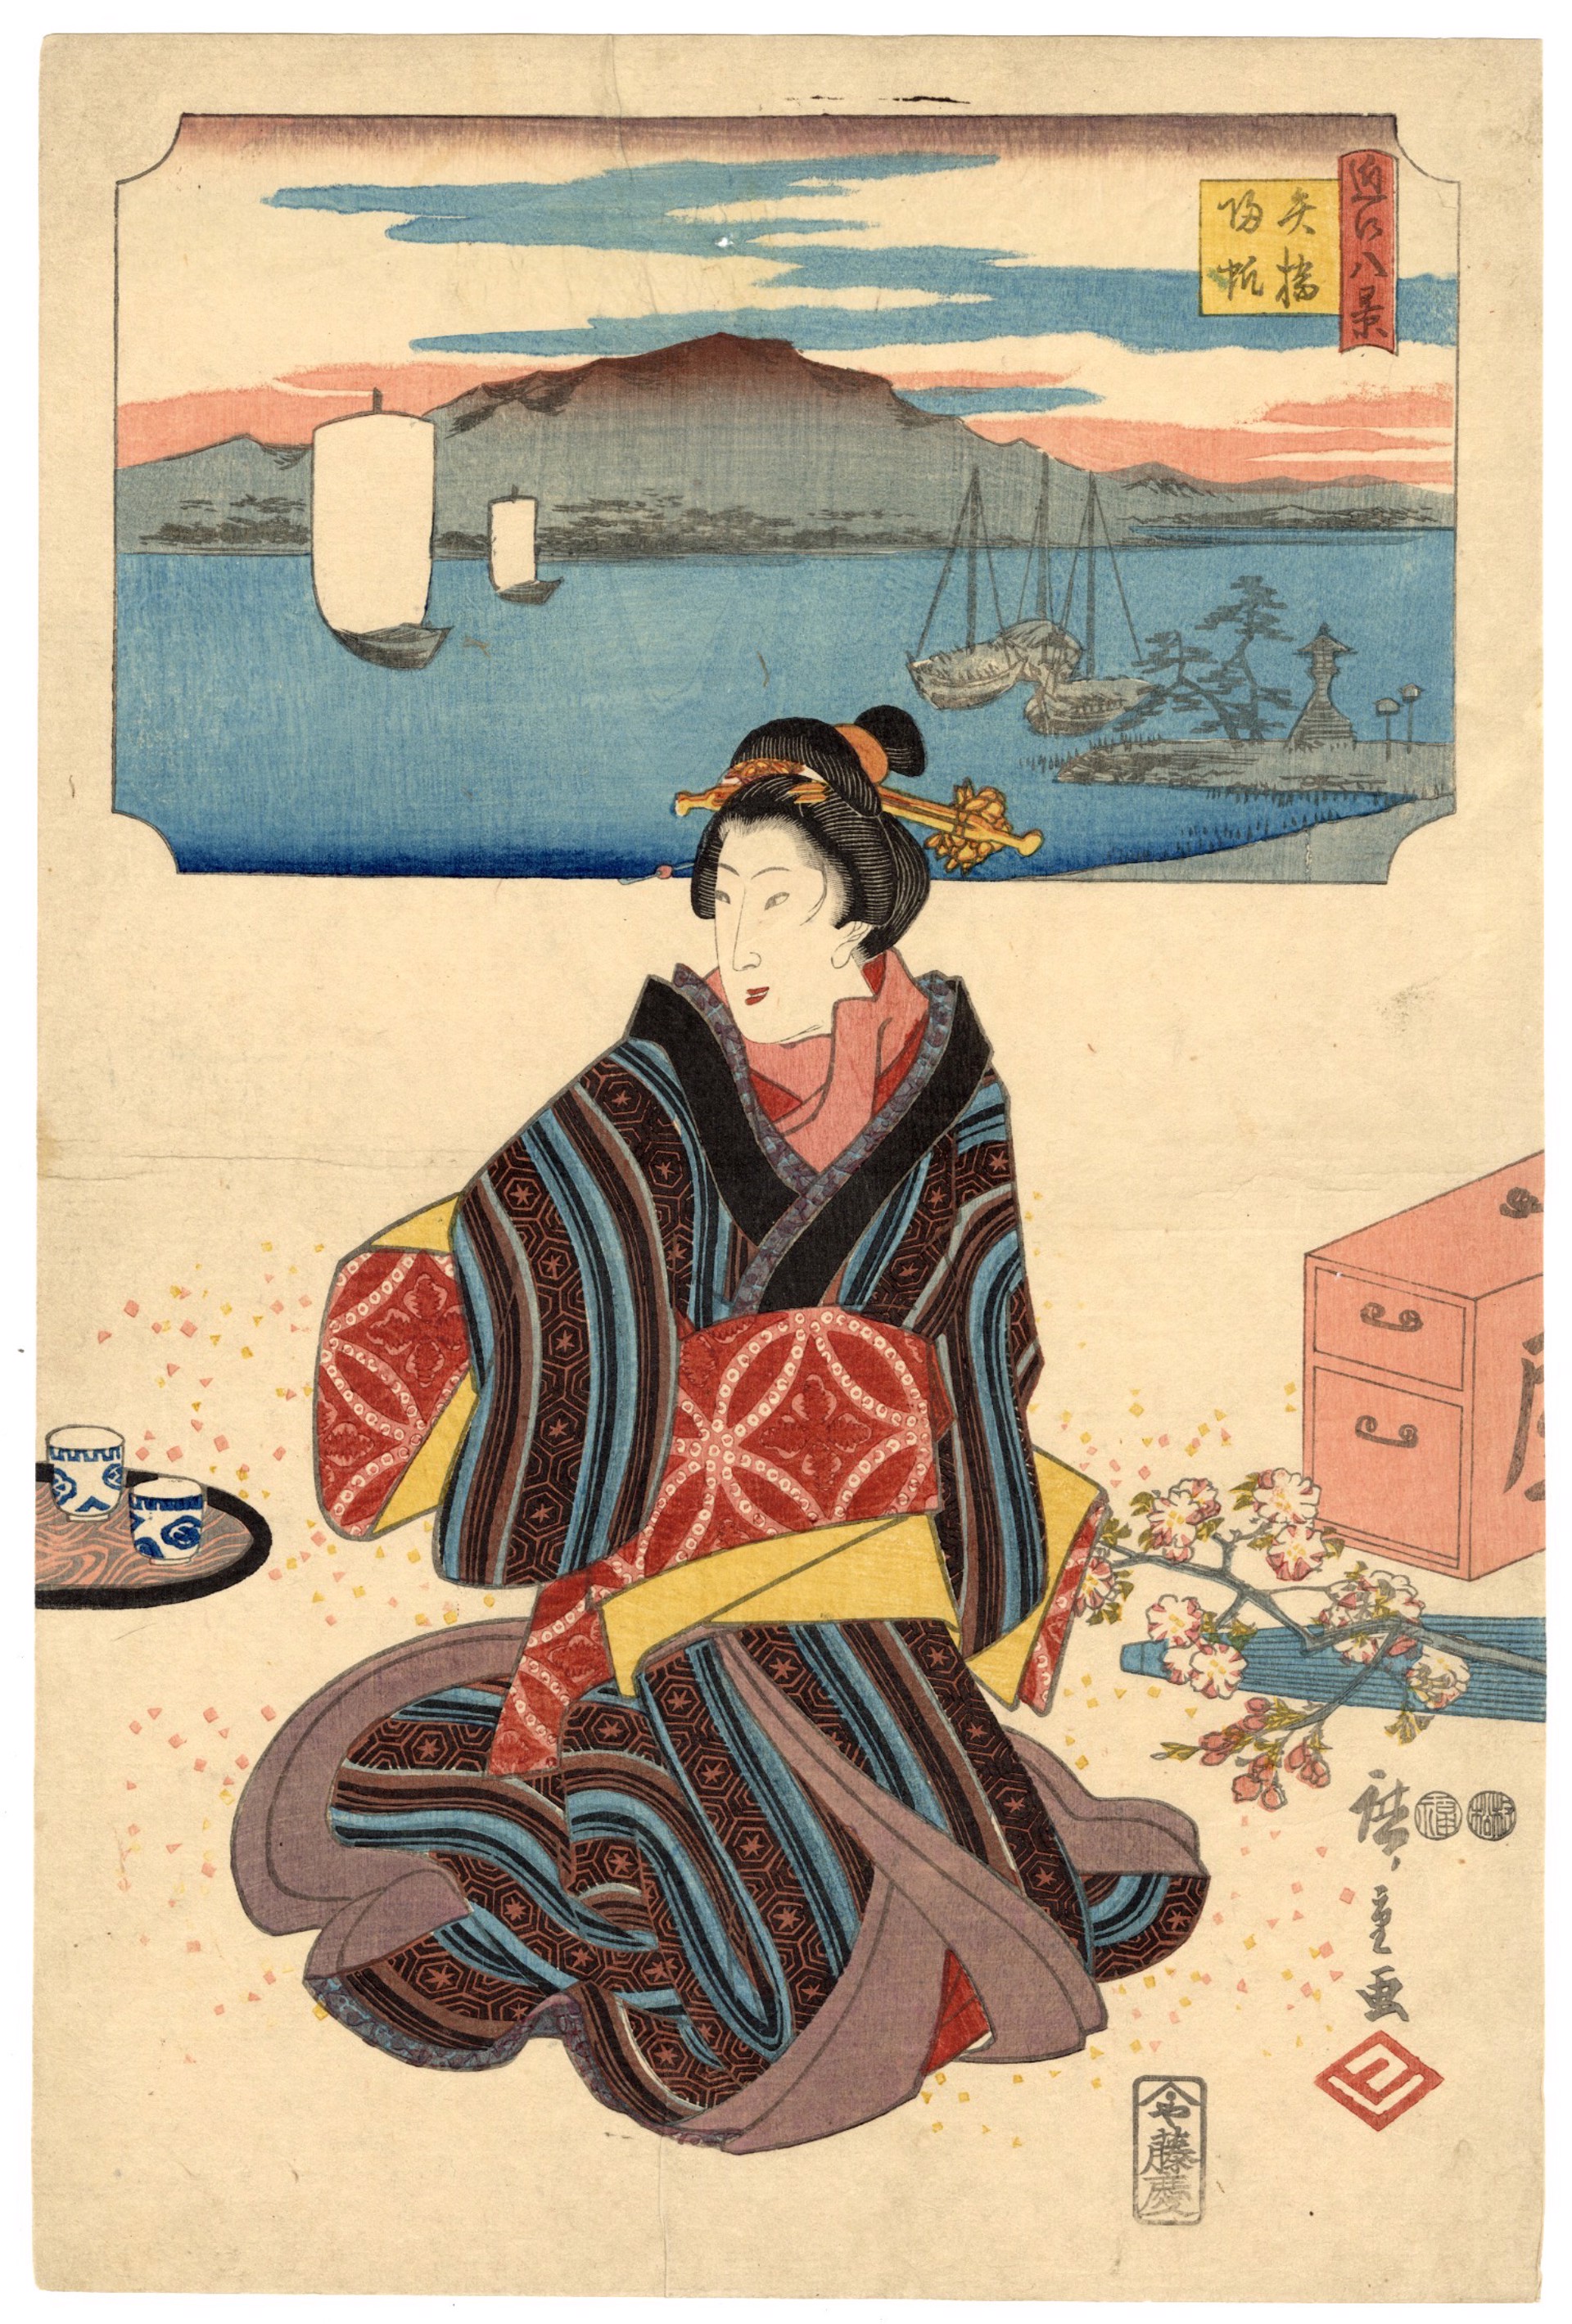 Returning Sails at Yabase by Hiroshige